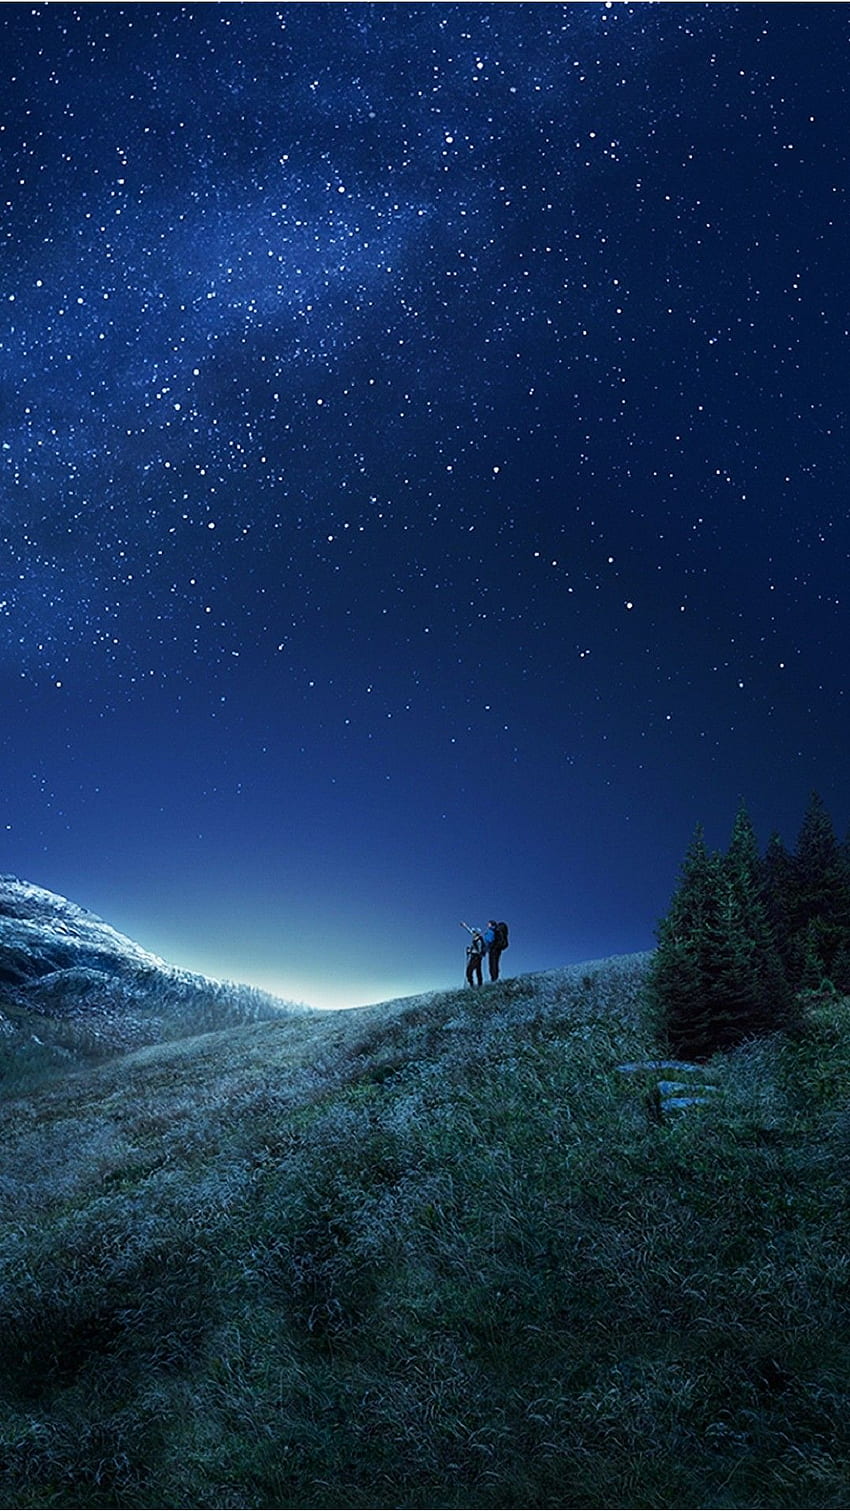 Samsung galaxy s8 cielo nocturno estrellado sobre las colinas: toque para ver más s de de fondo de pantalla del teléfono